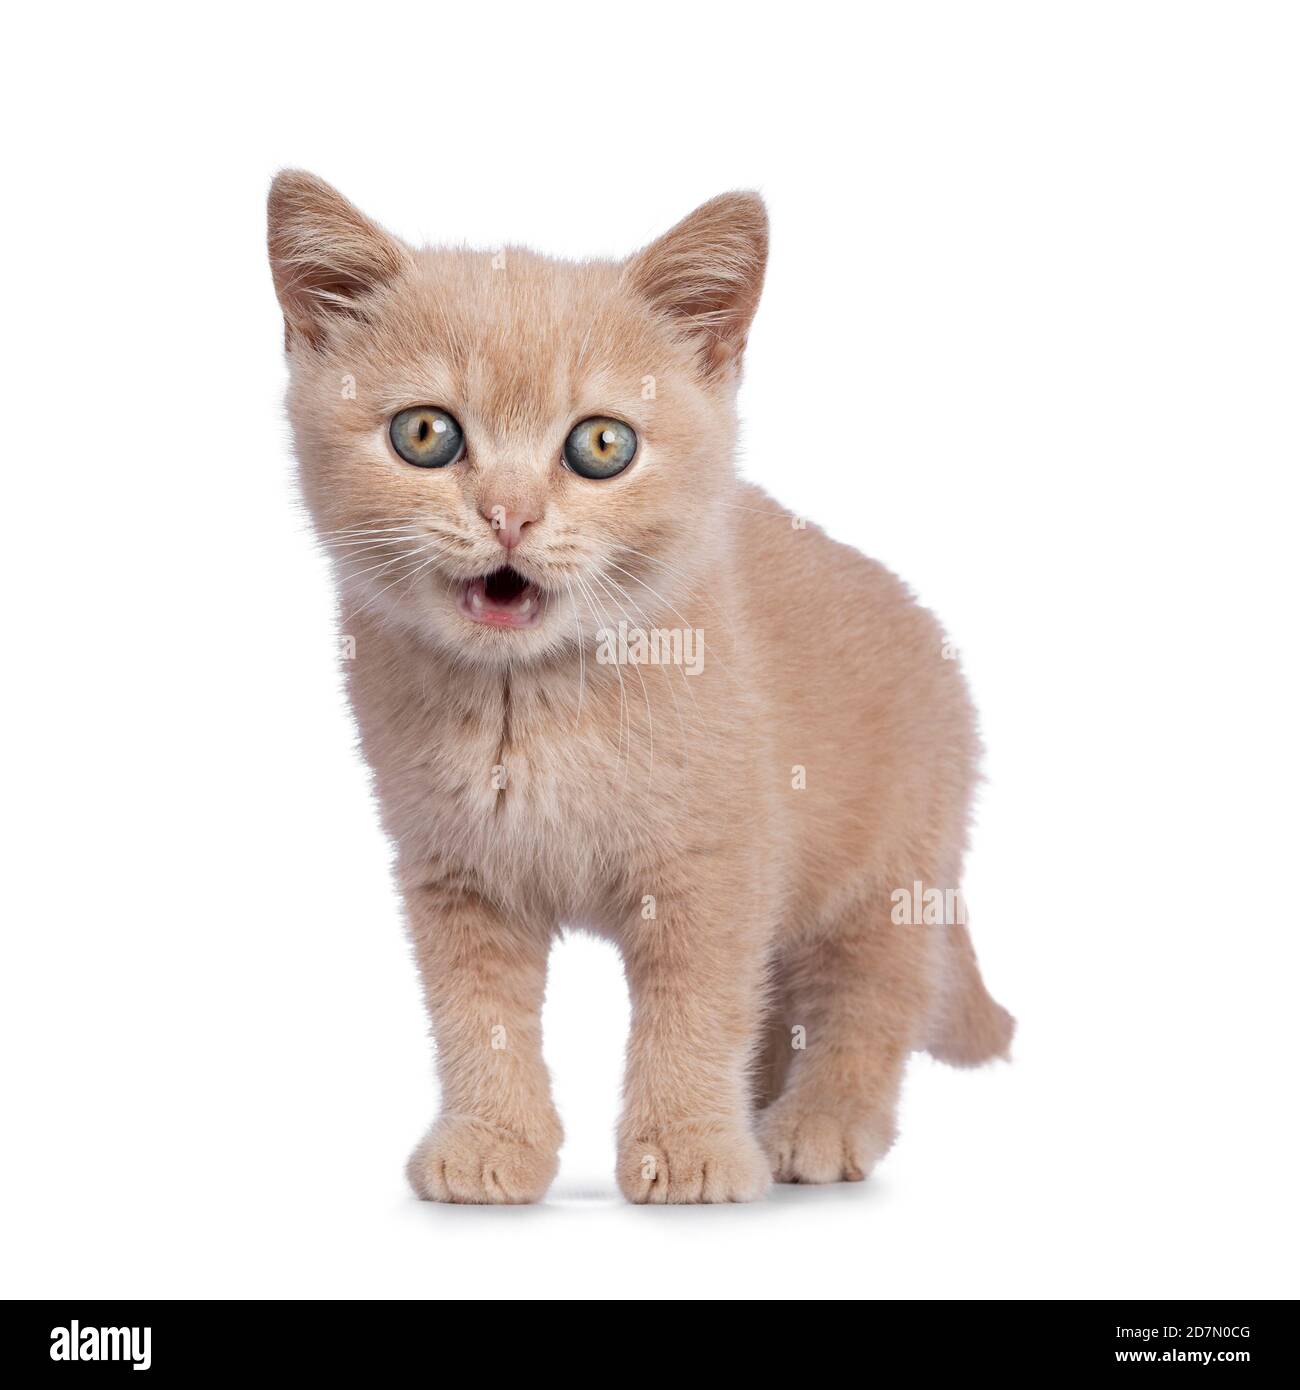 Cute creme British Kurzhaar Katze Kätzchen, stehend nach vorne. Blick direkt auf die Kamera. Isoliert auf weißem Hintergrund. Mund offen. Stockfoto